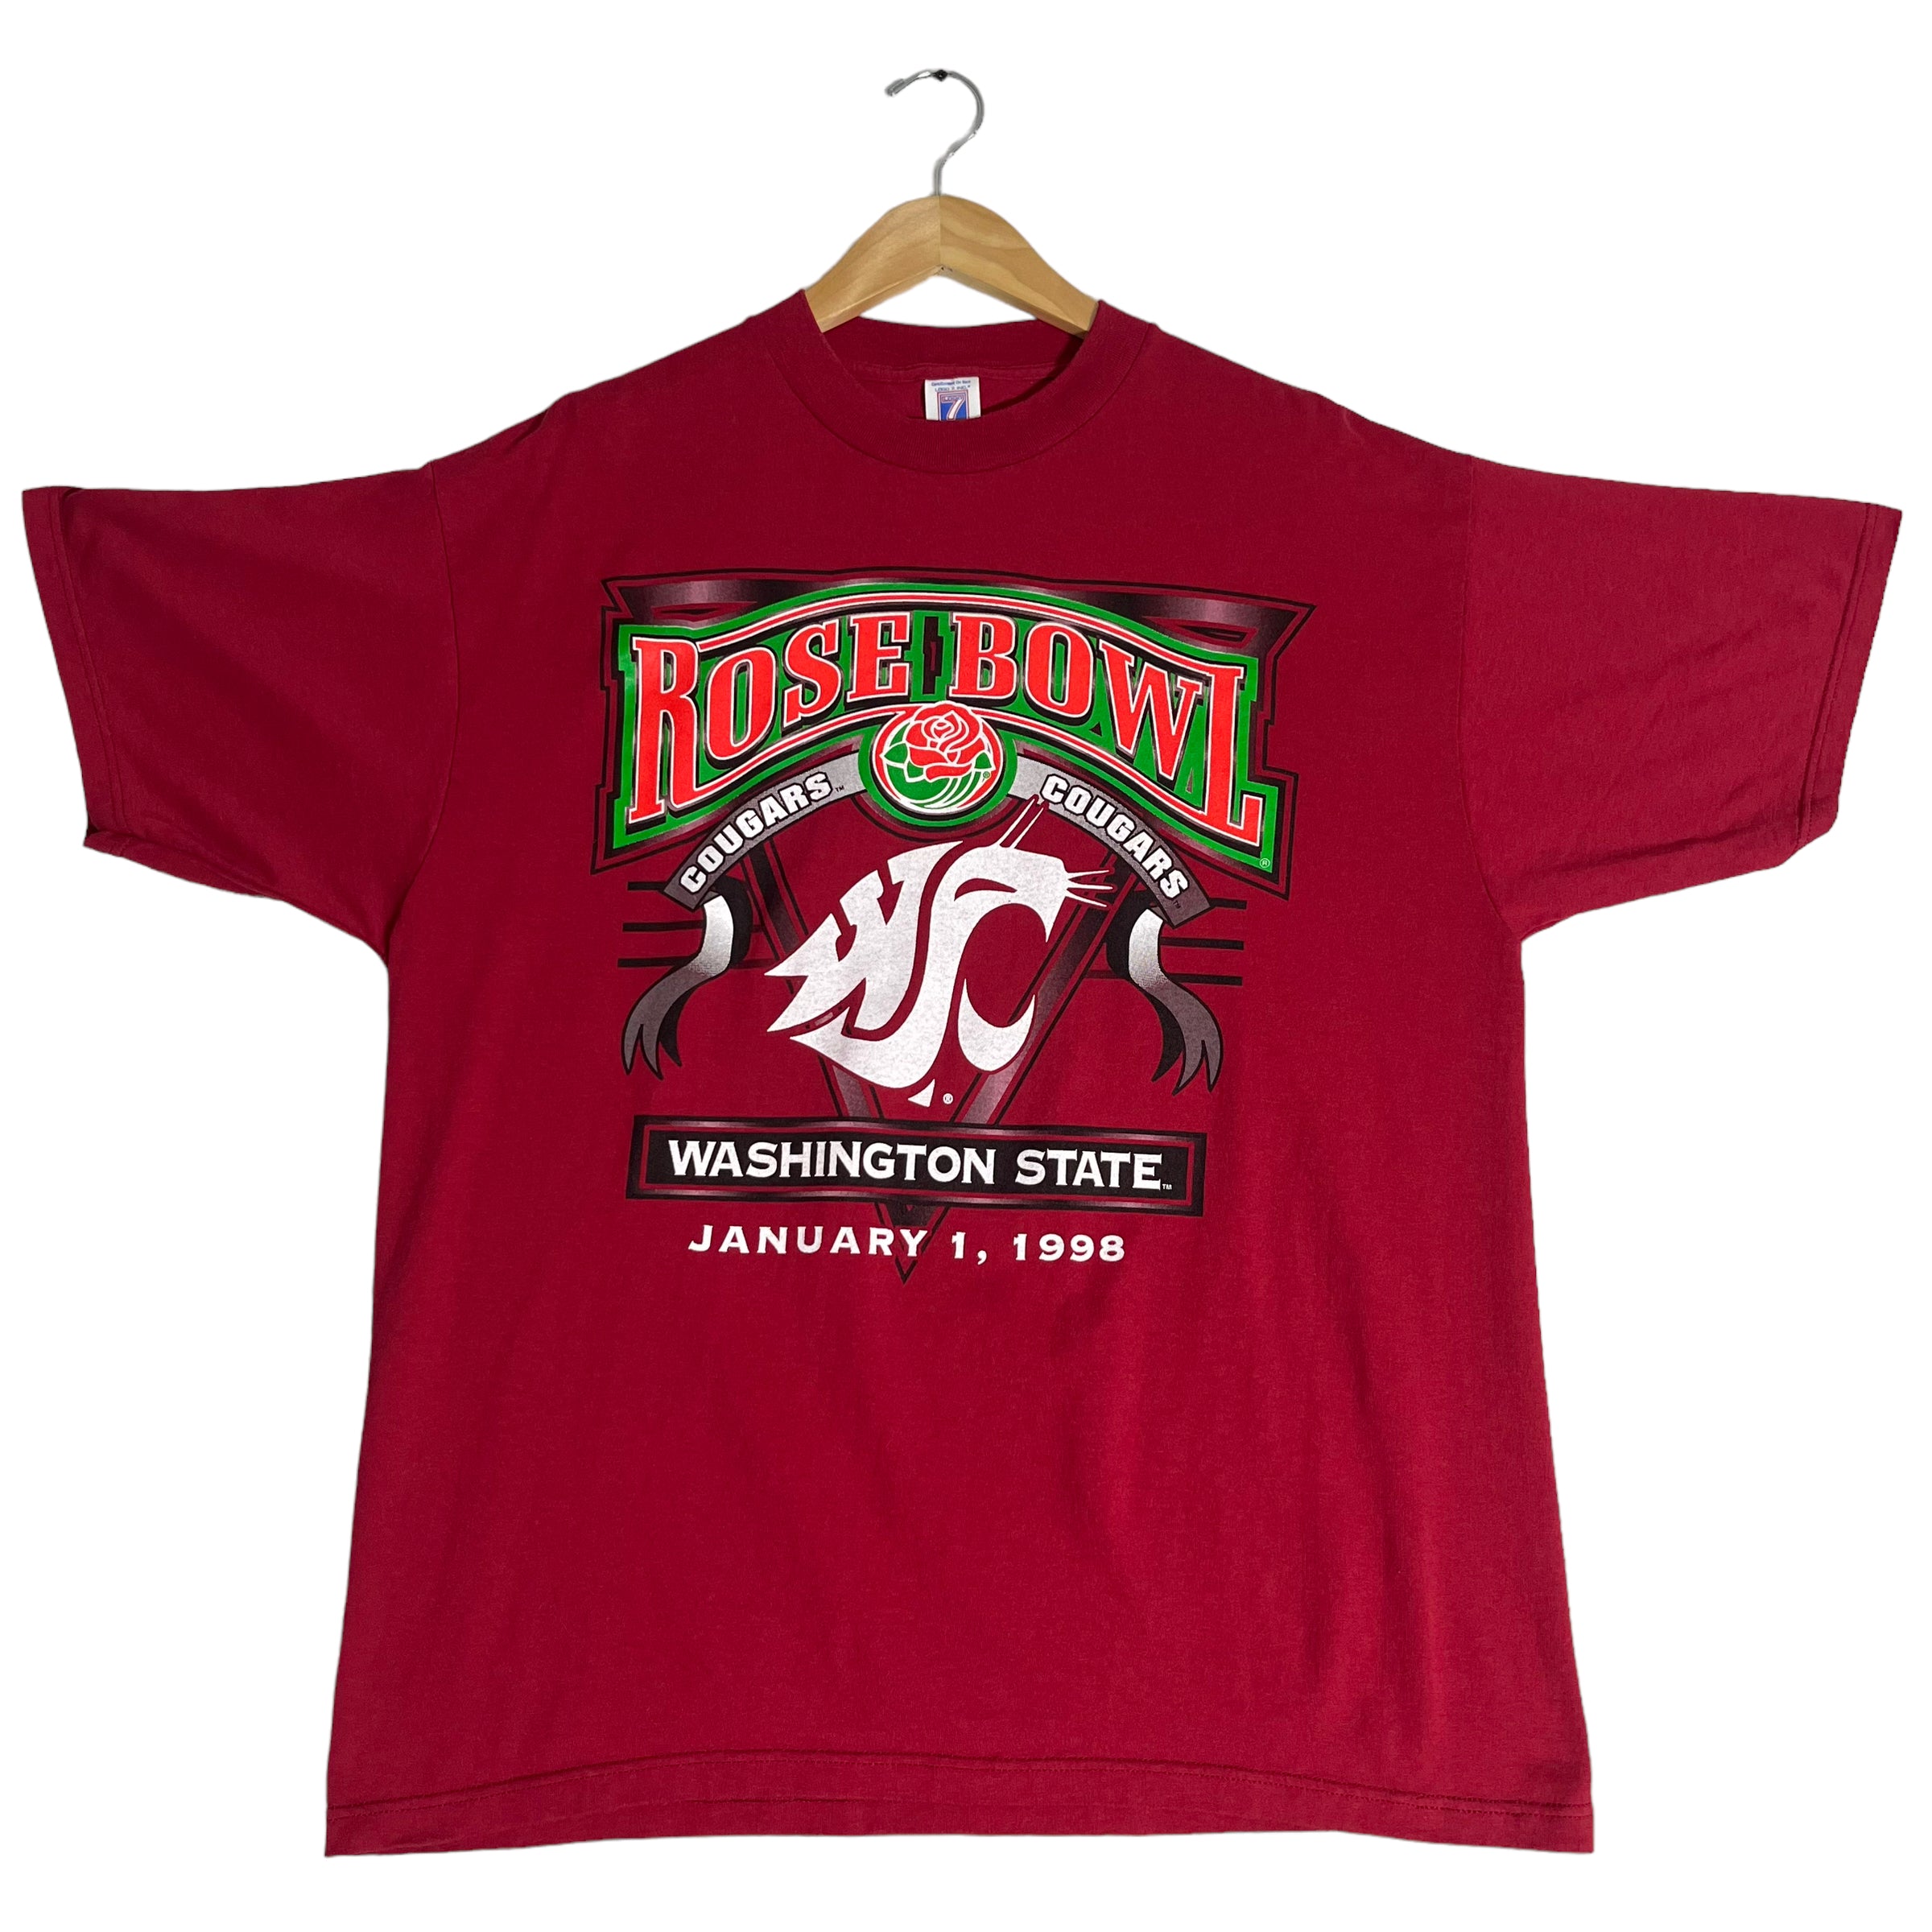 Vintage Washington State Rose Bowl Tee 90s